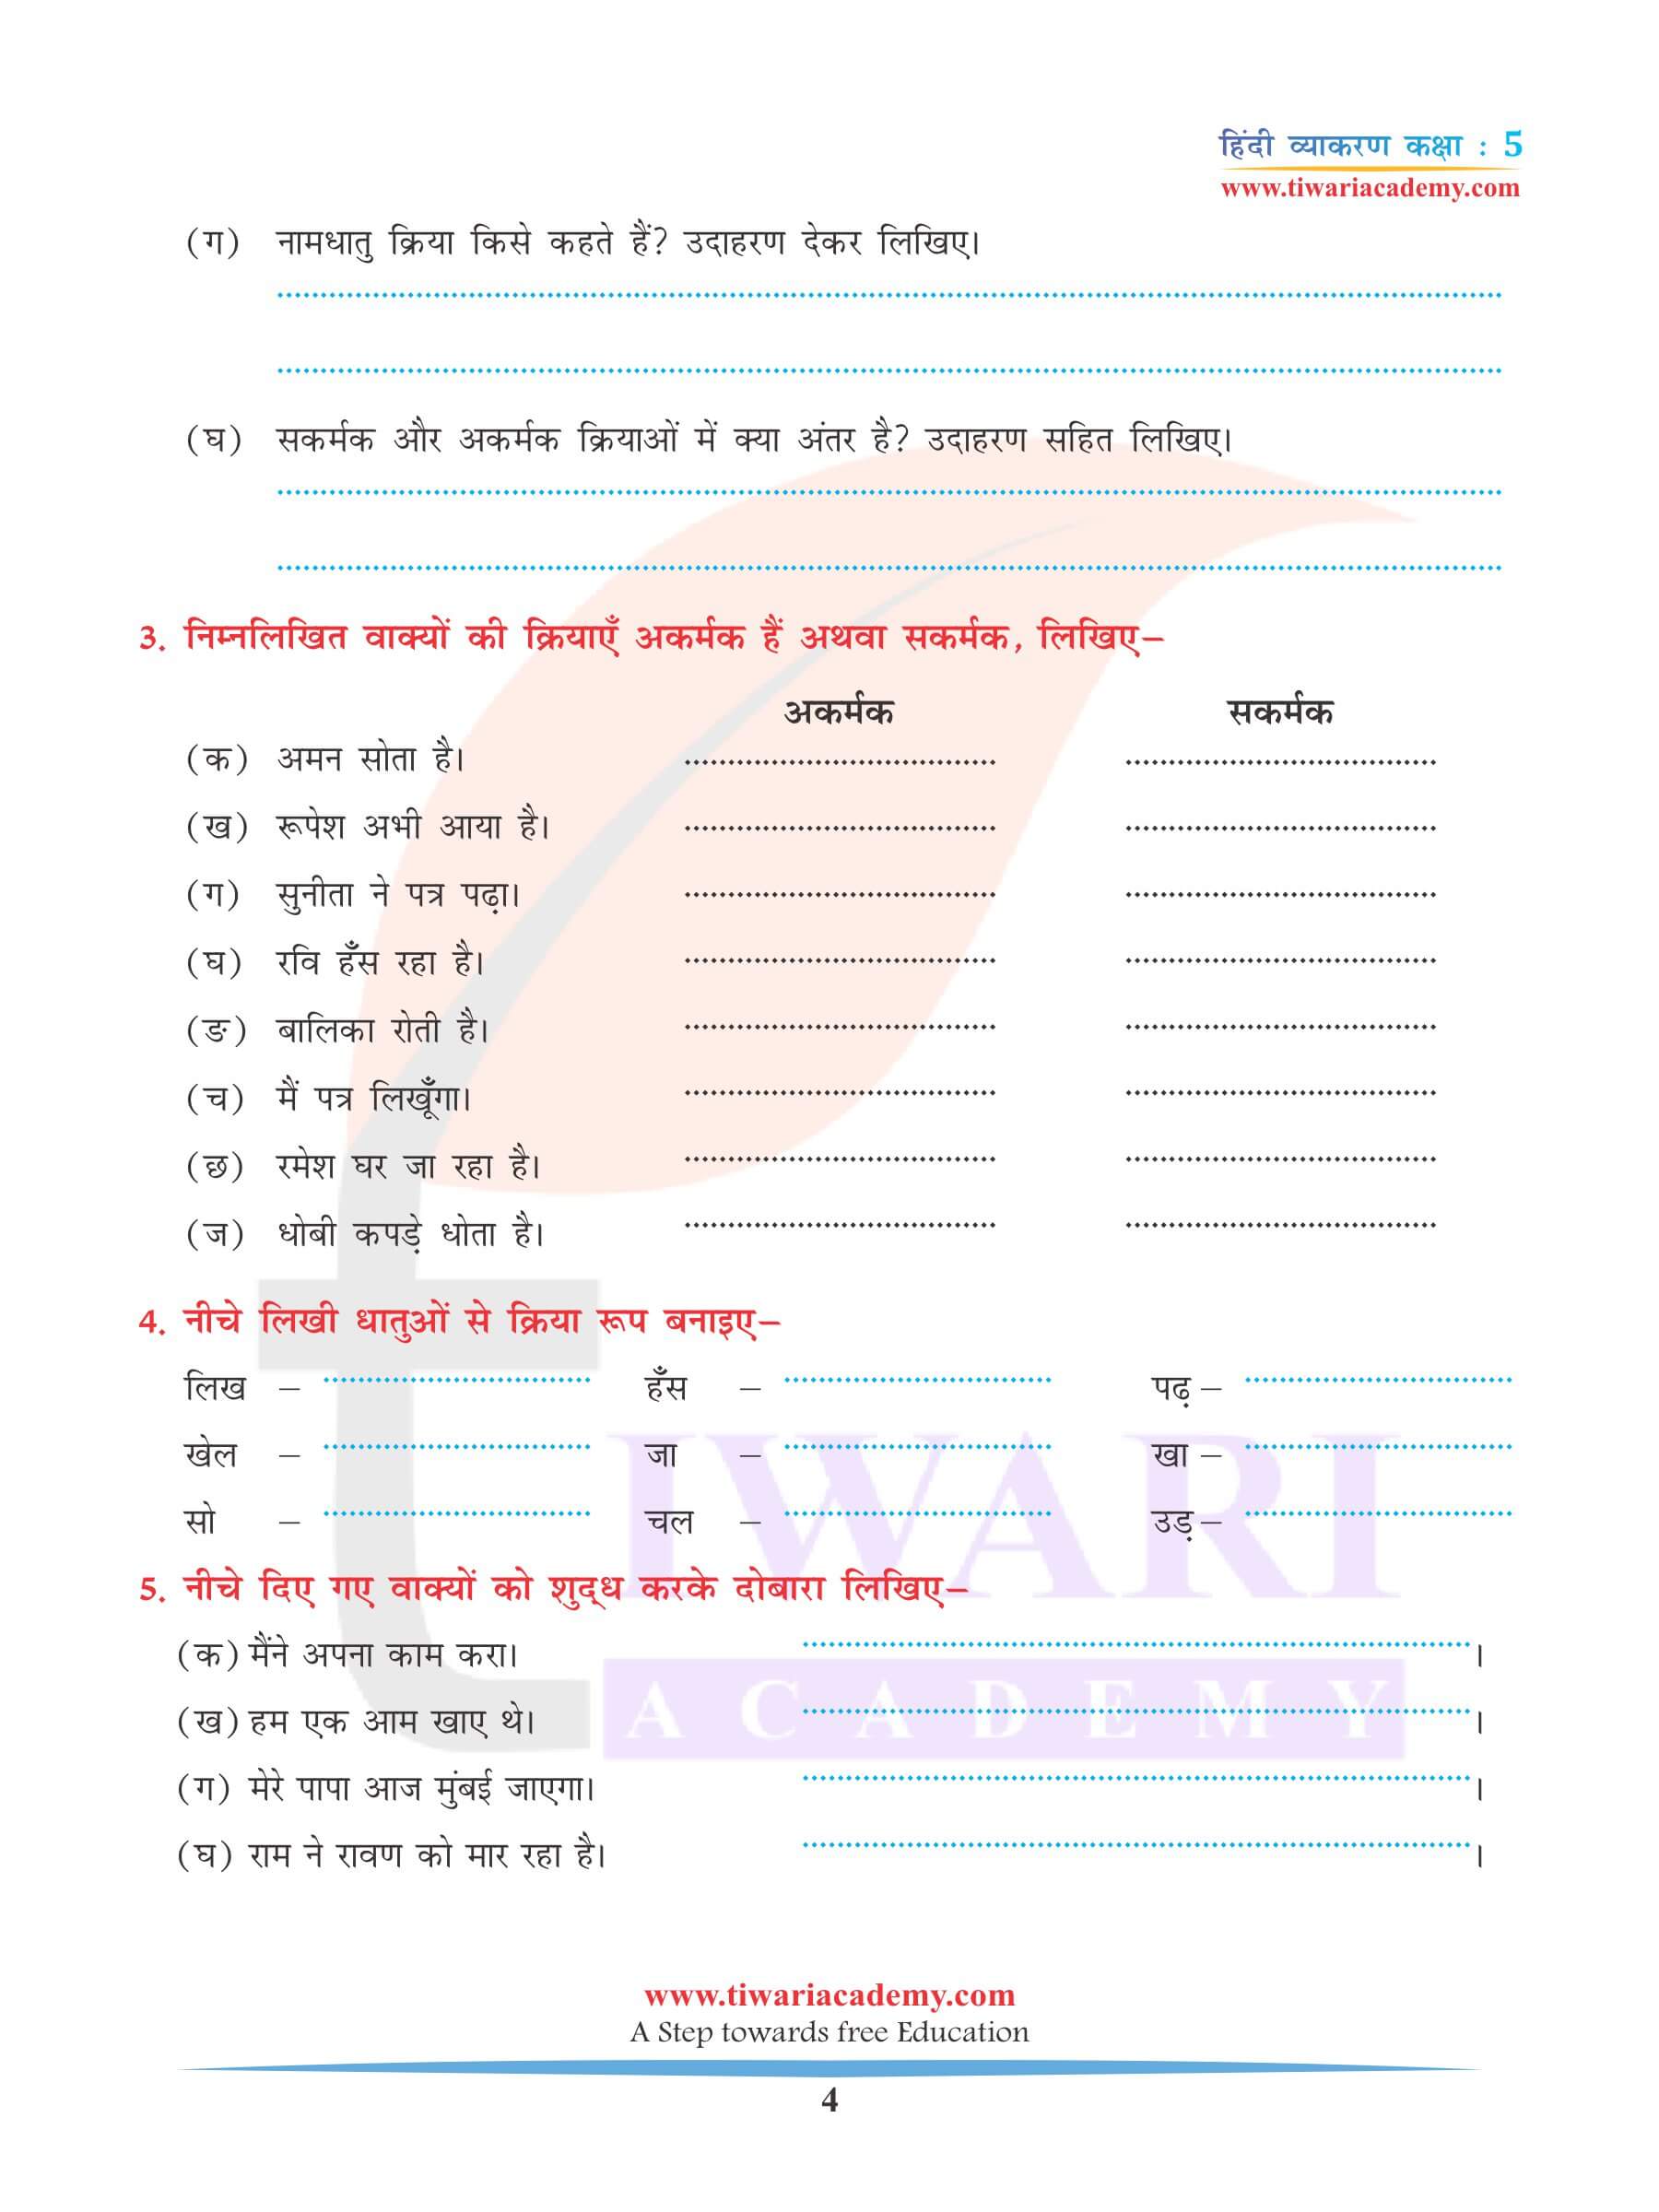 कक्षा 5 हिंदी व्याकरण अध्याय 7 क्रिया के लिए अभ्यास प्रश्न